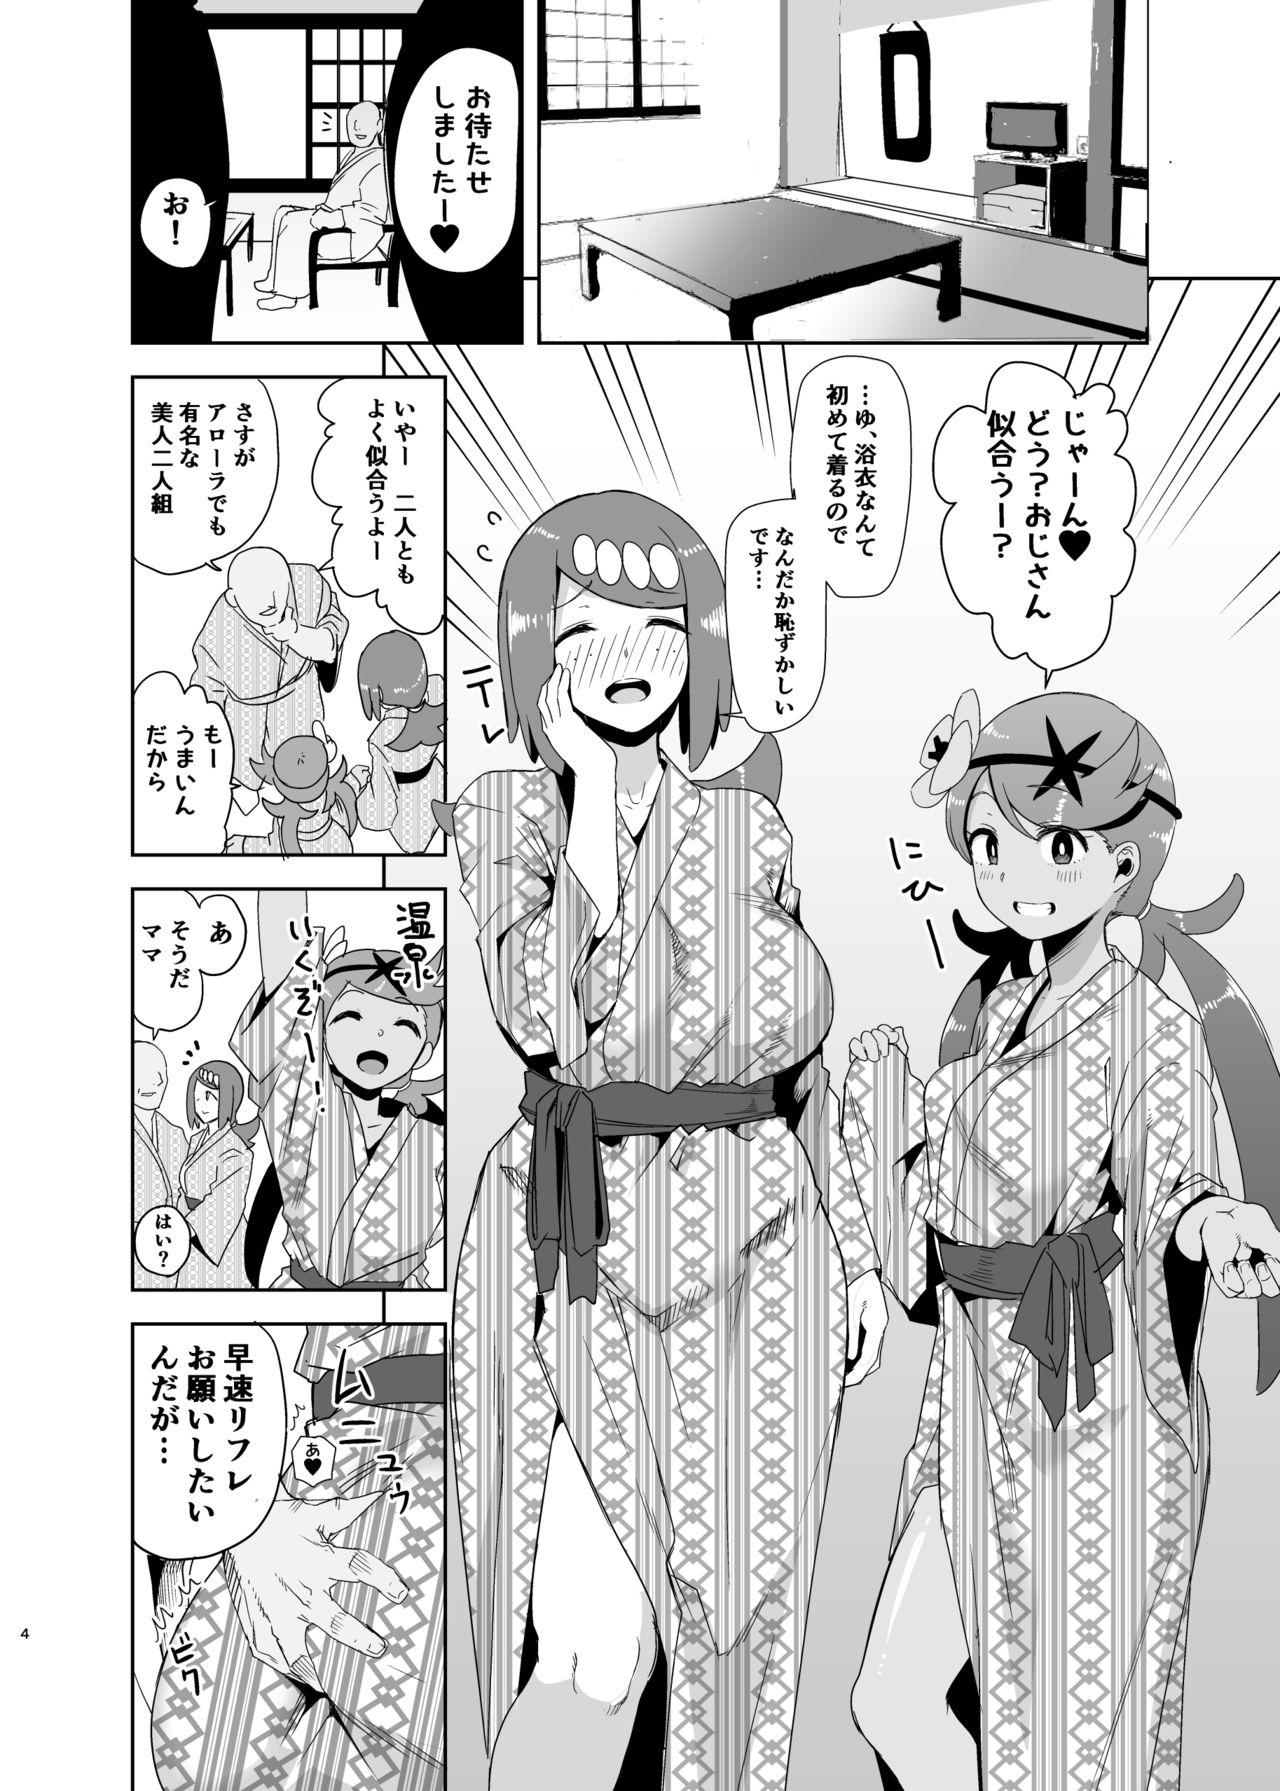 Women Sucking Alola no Yoru no Sugata 2 - Pokemon Forbidden - Page 3